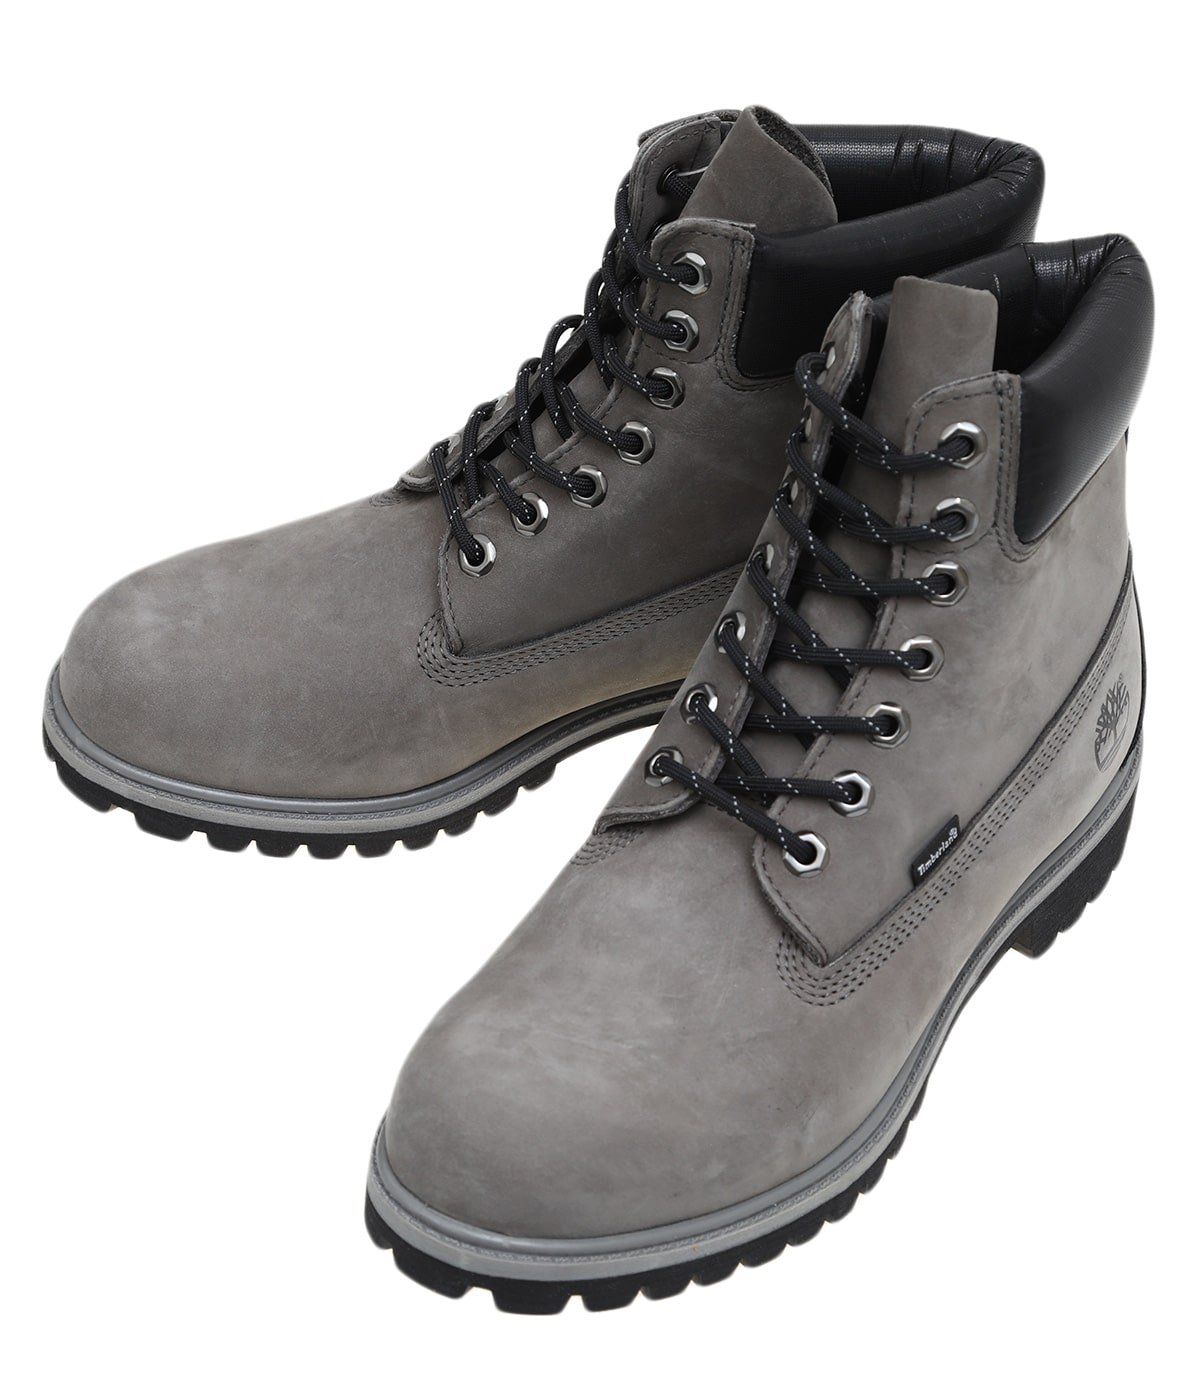 6in Premium Boots | Timberland(ティンバーランド) / シューズ ブーツ 